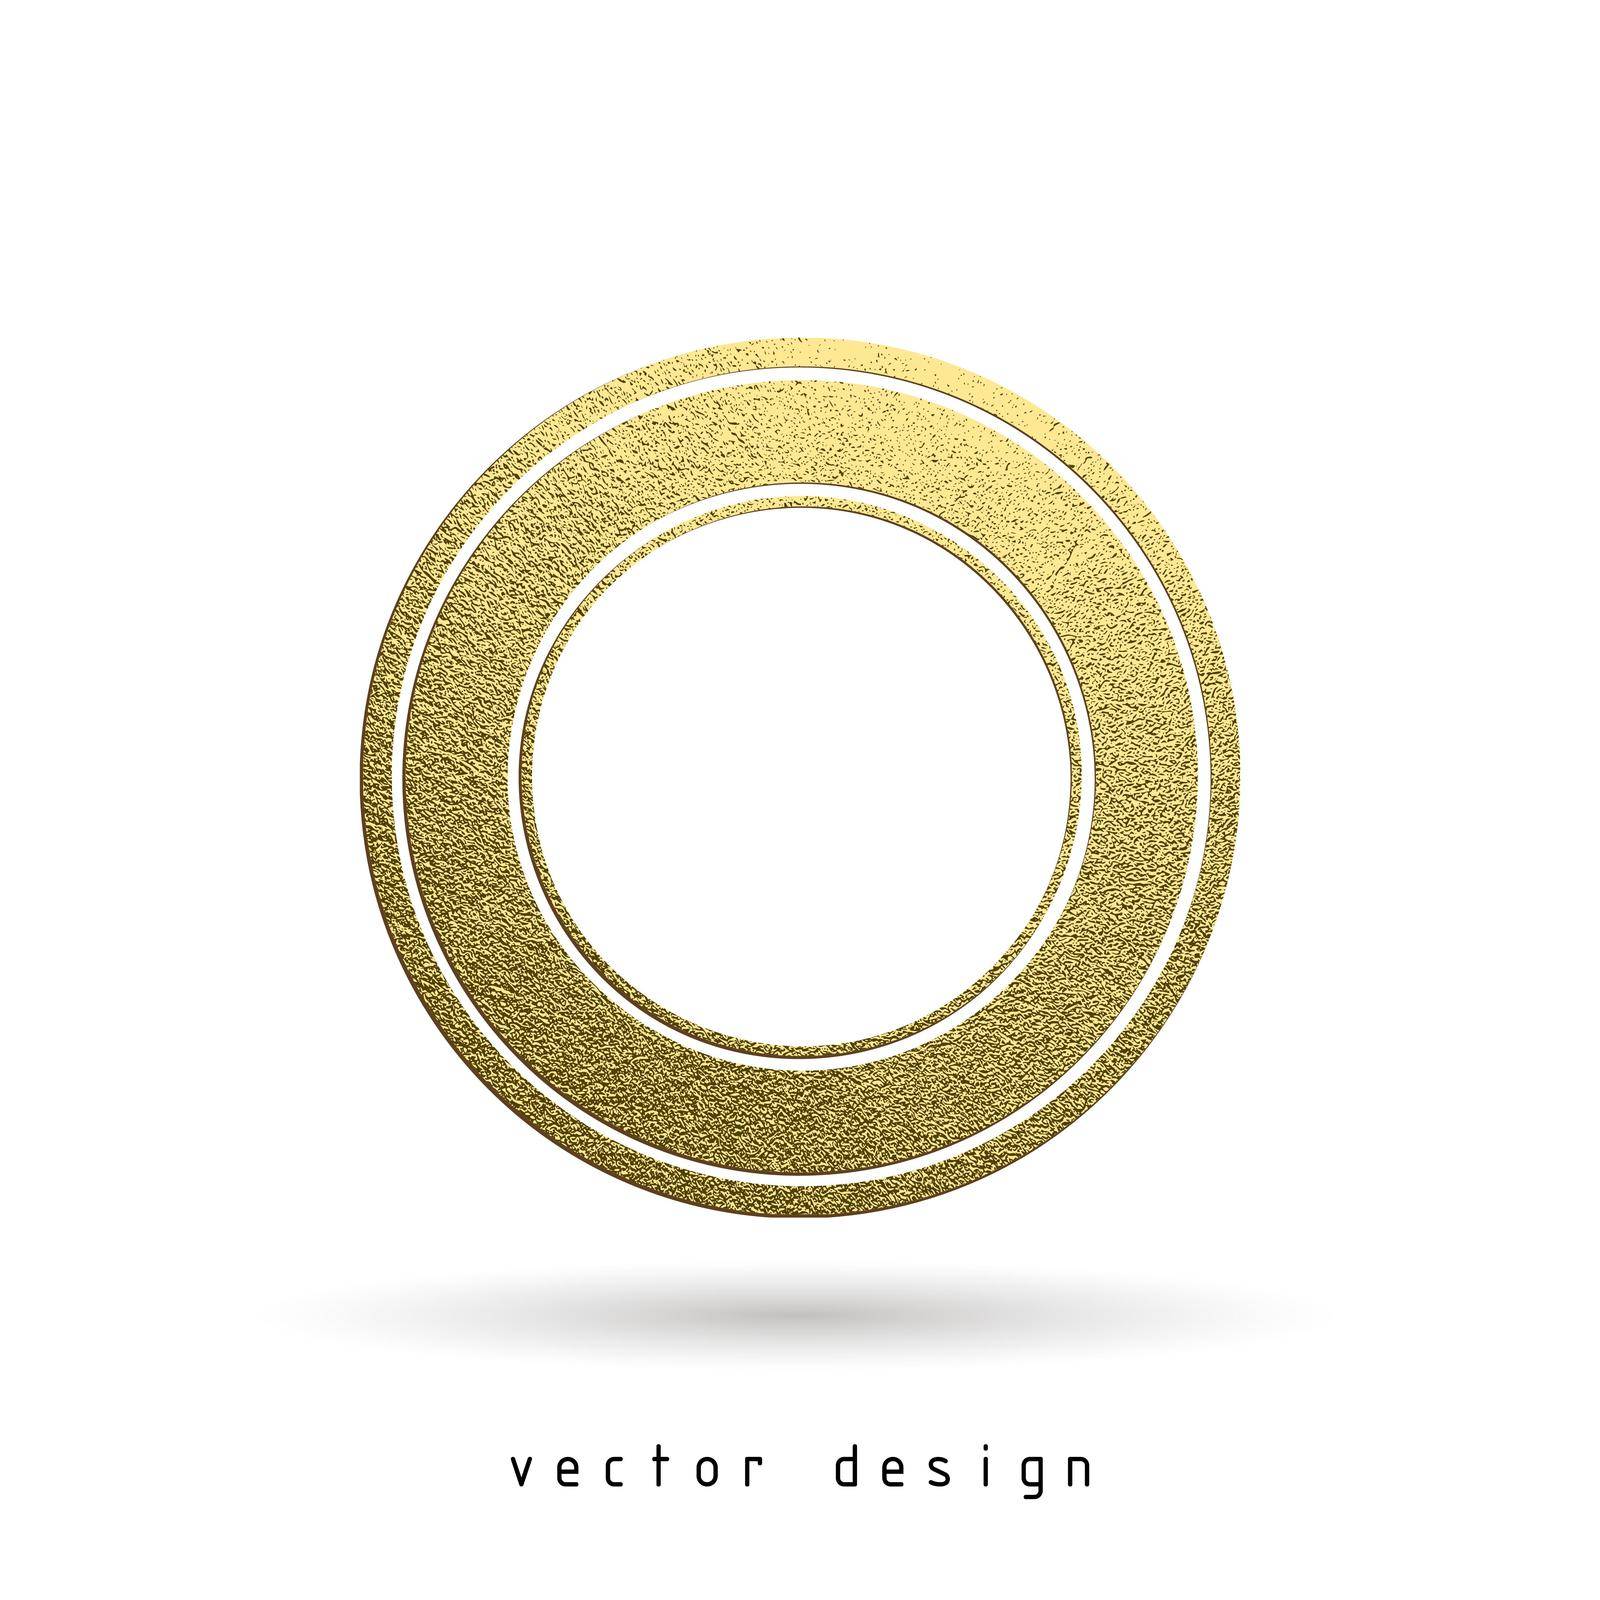 Vector illustration. Gold rubber stamp. Luxury golden vintage border.